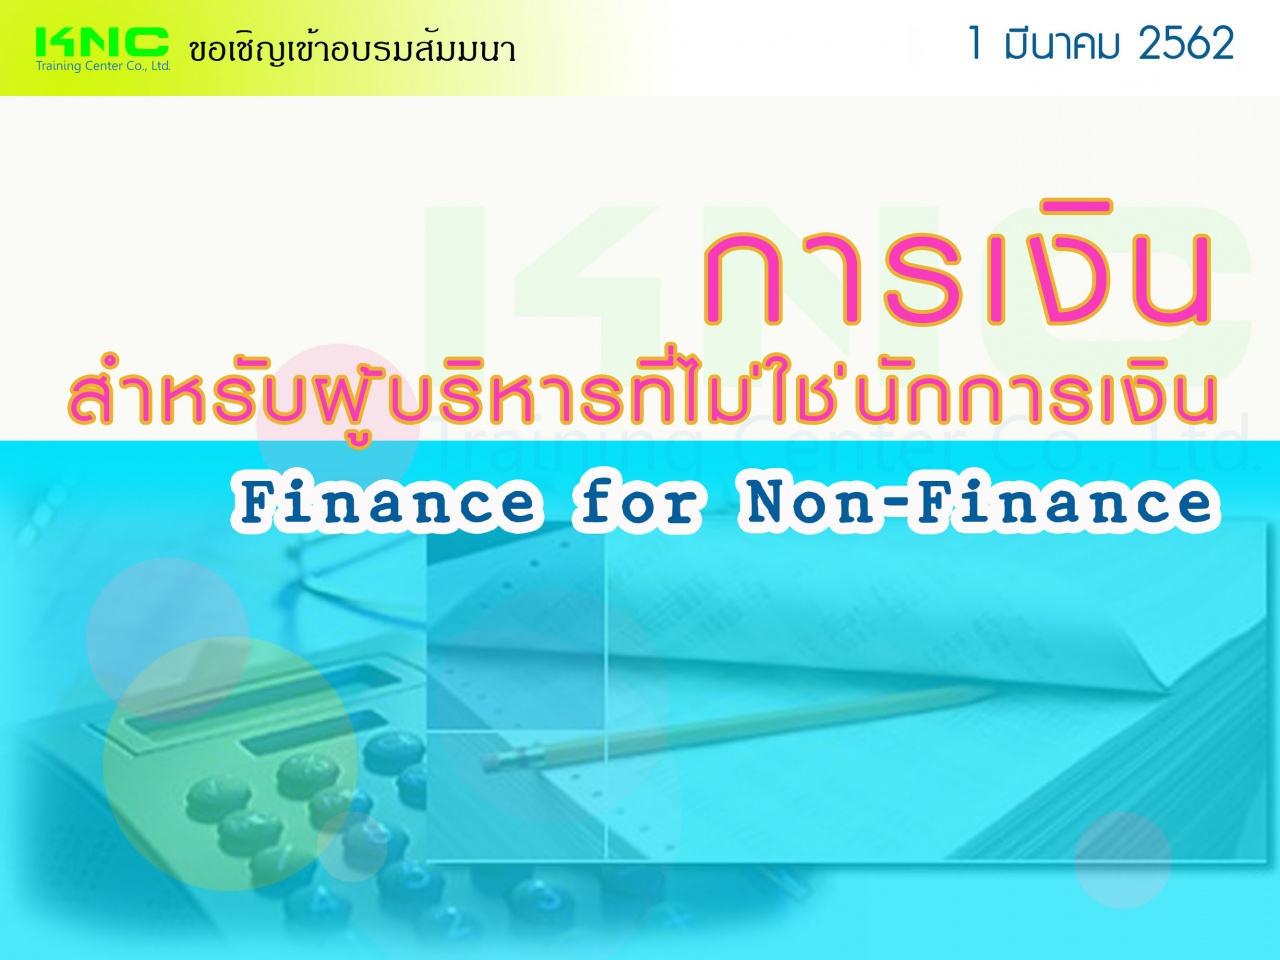 การเงินสำหรับผู้บริหารที่ไม่ใช่นักการเงิน (Finance for Non-Finance)